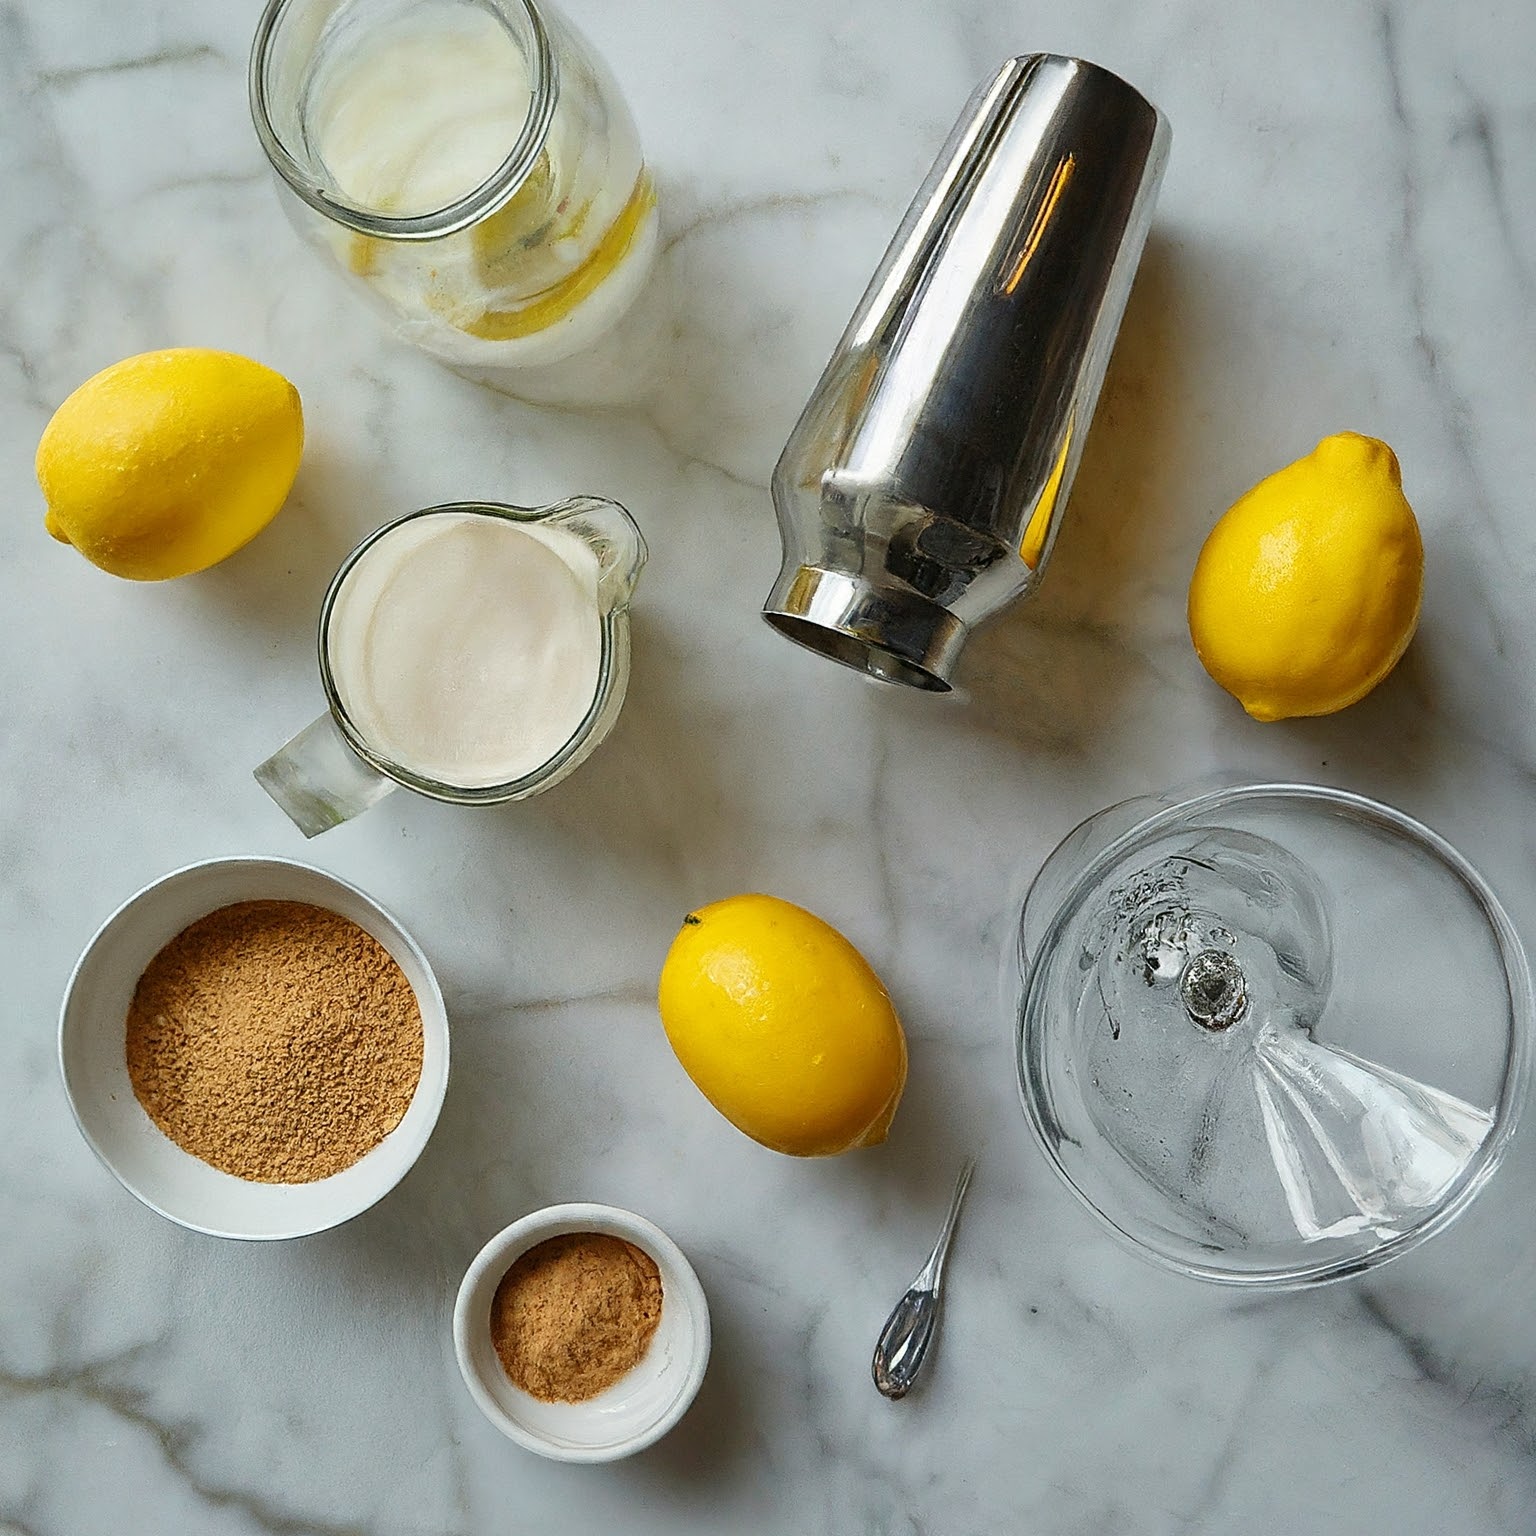 Overhead view of Lemon Meringue Martini ingredients on marble countertop.